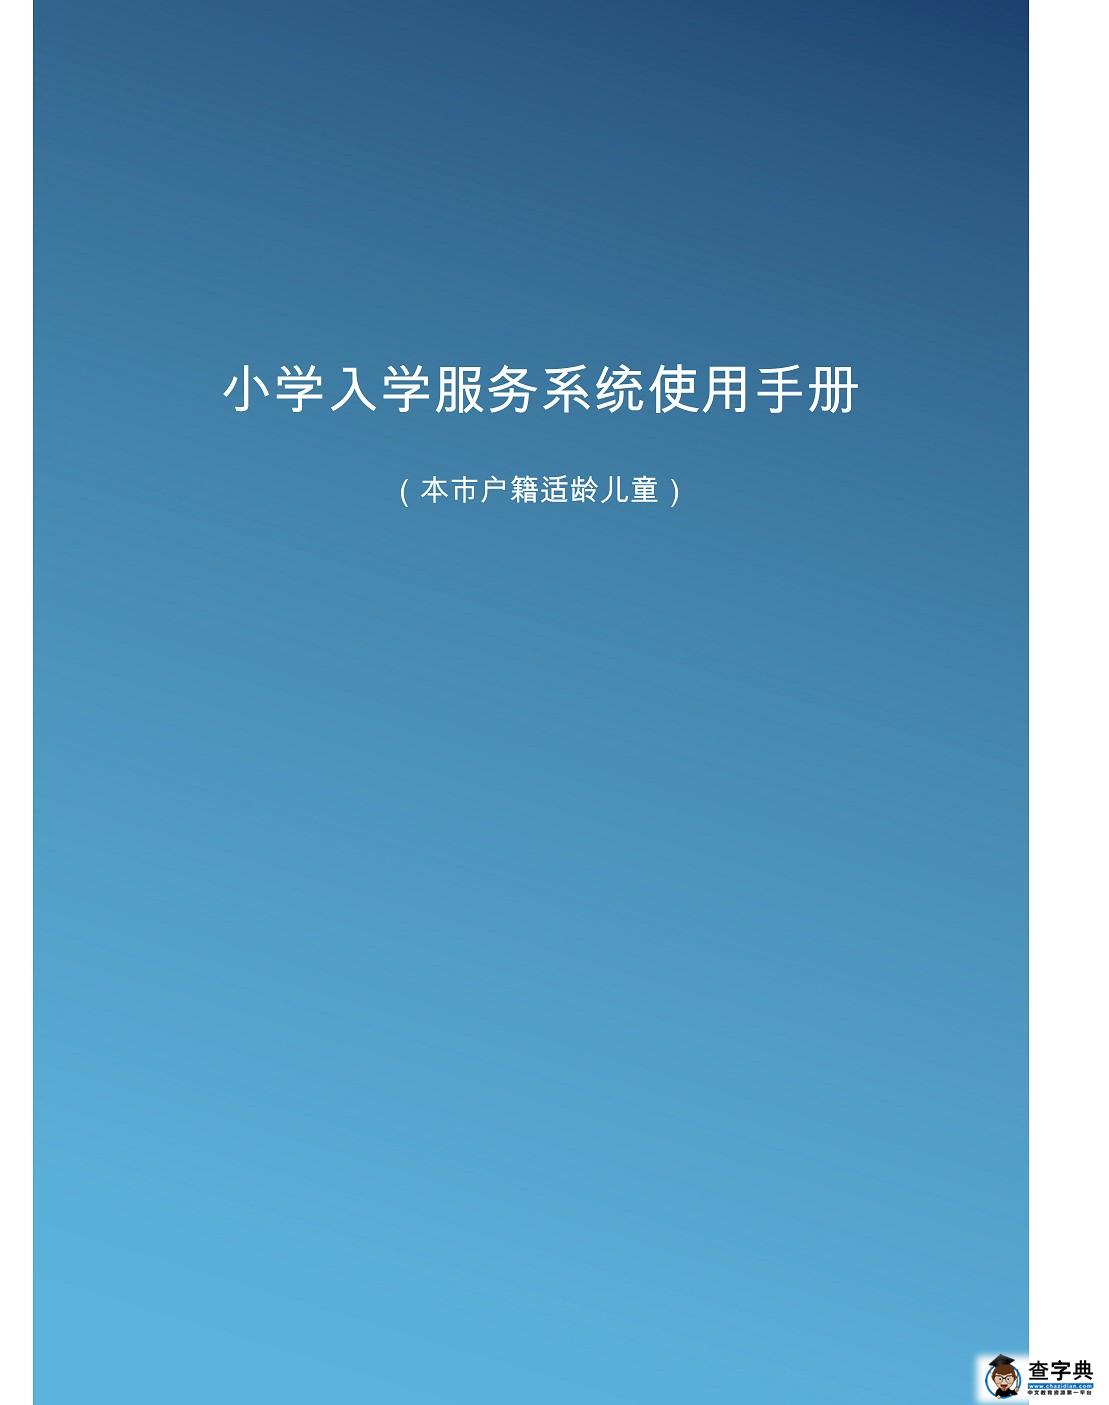 2016年北京幼升小信息采集入学服务平台使用手册-京籍适龄儿童1